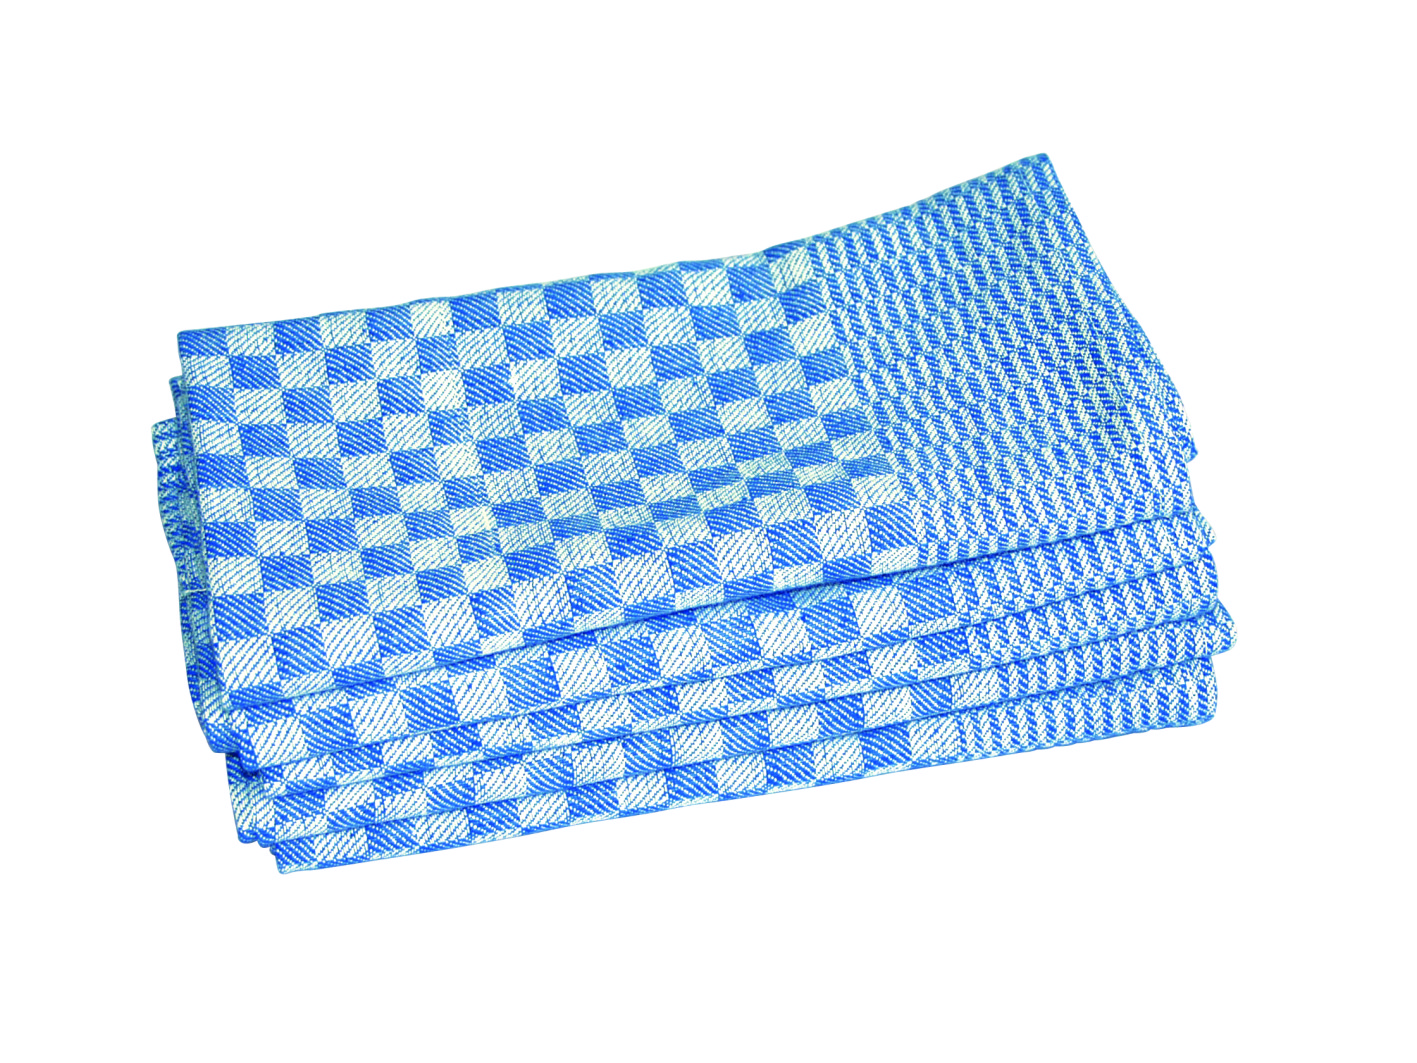 Touchon (Grubentuch), 50 x 100 cm, Farbe blau/weiß